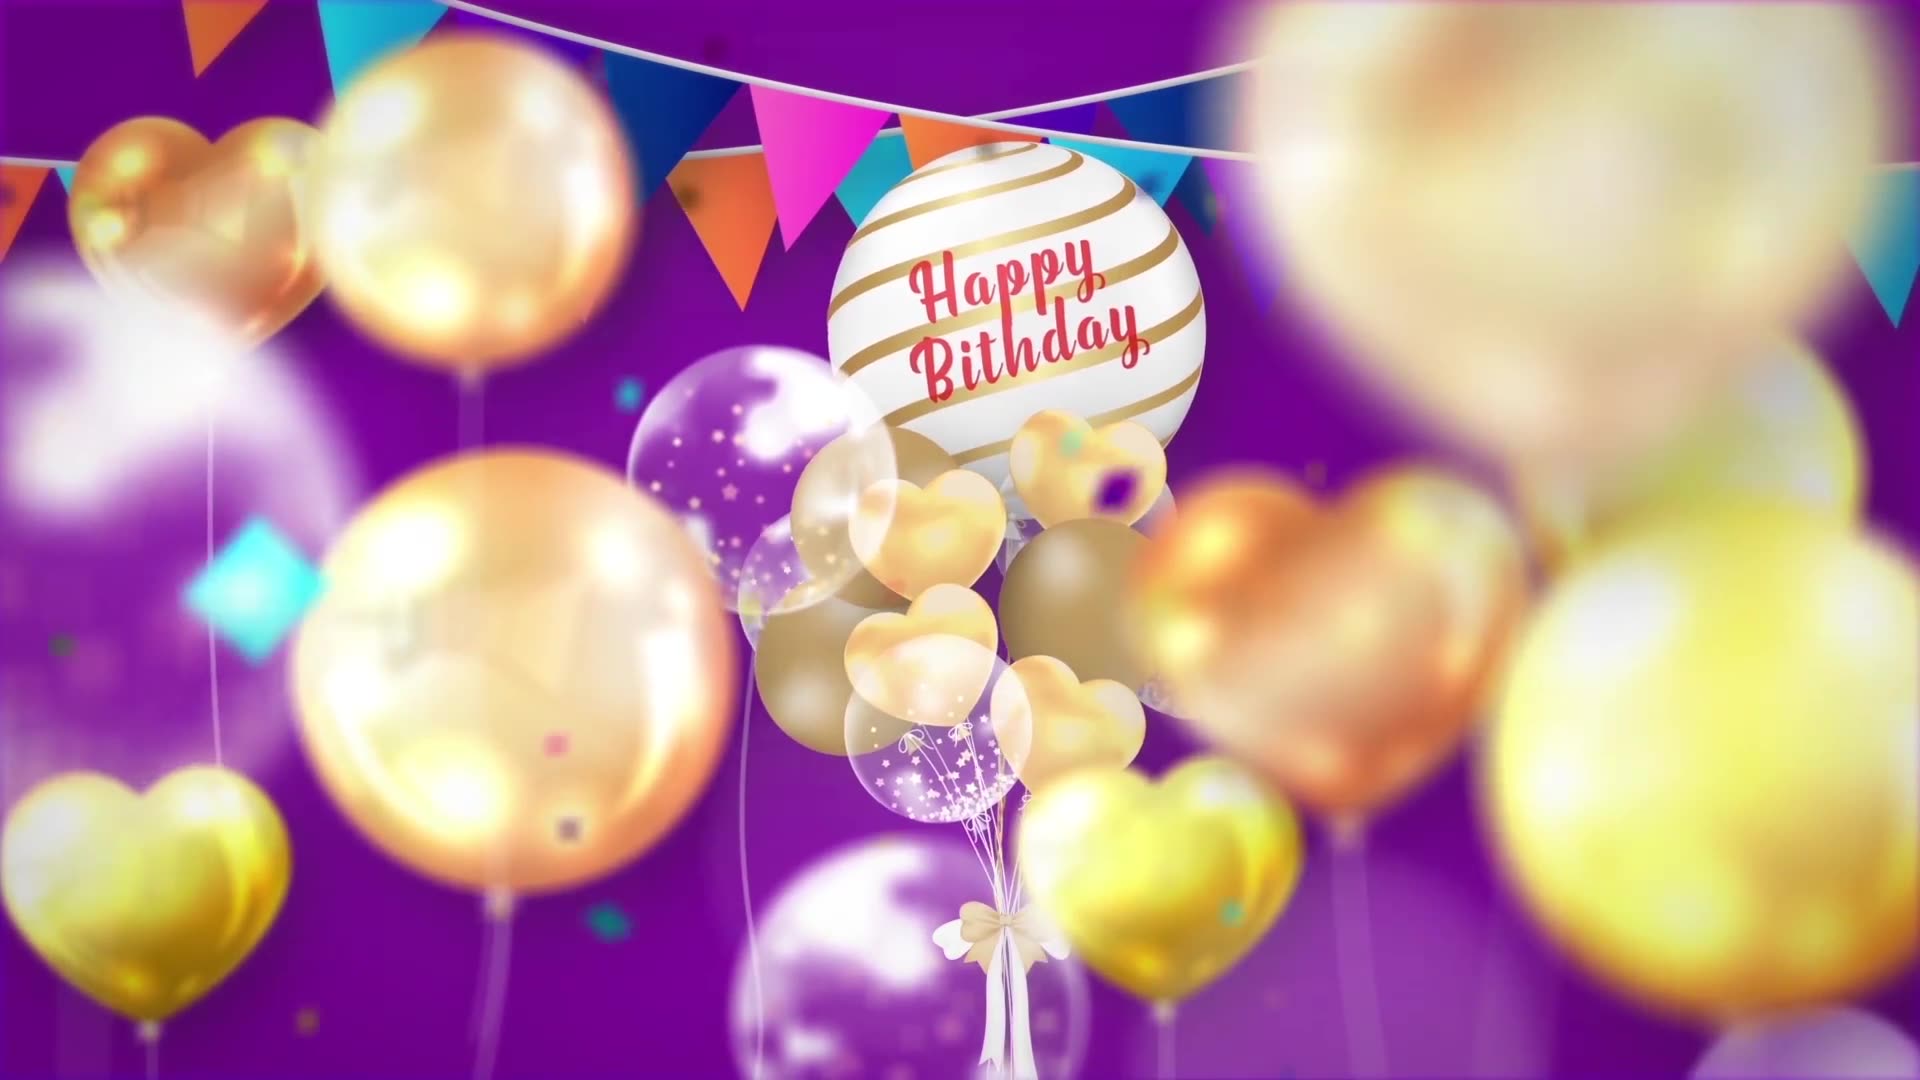 Happy Birthday Opener | Mogrt Videohive 33727399 Premiere Pro Image 3